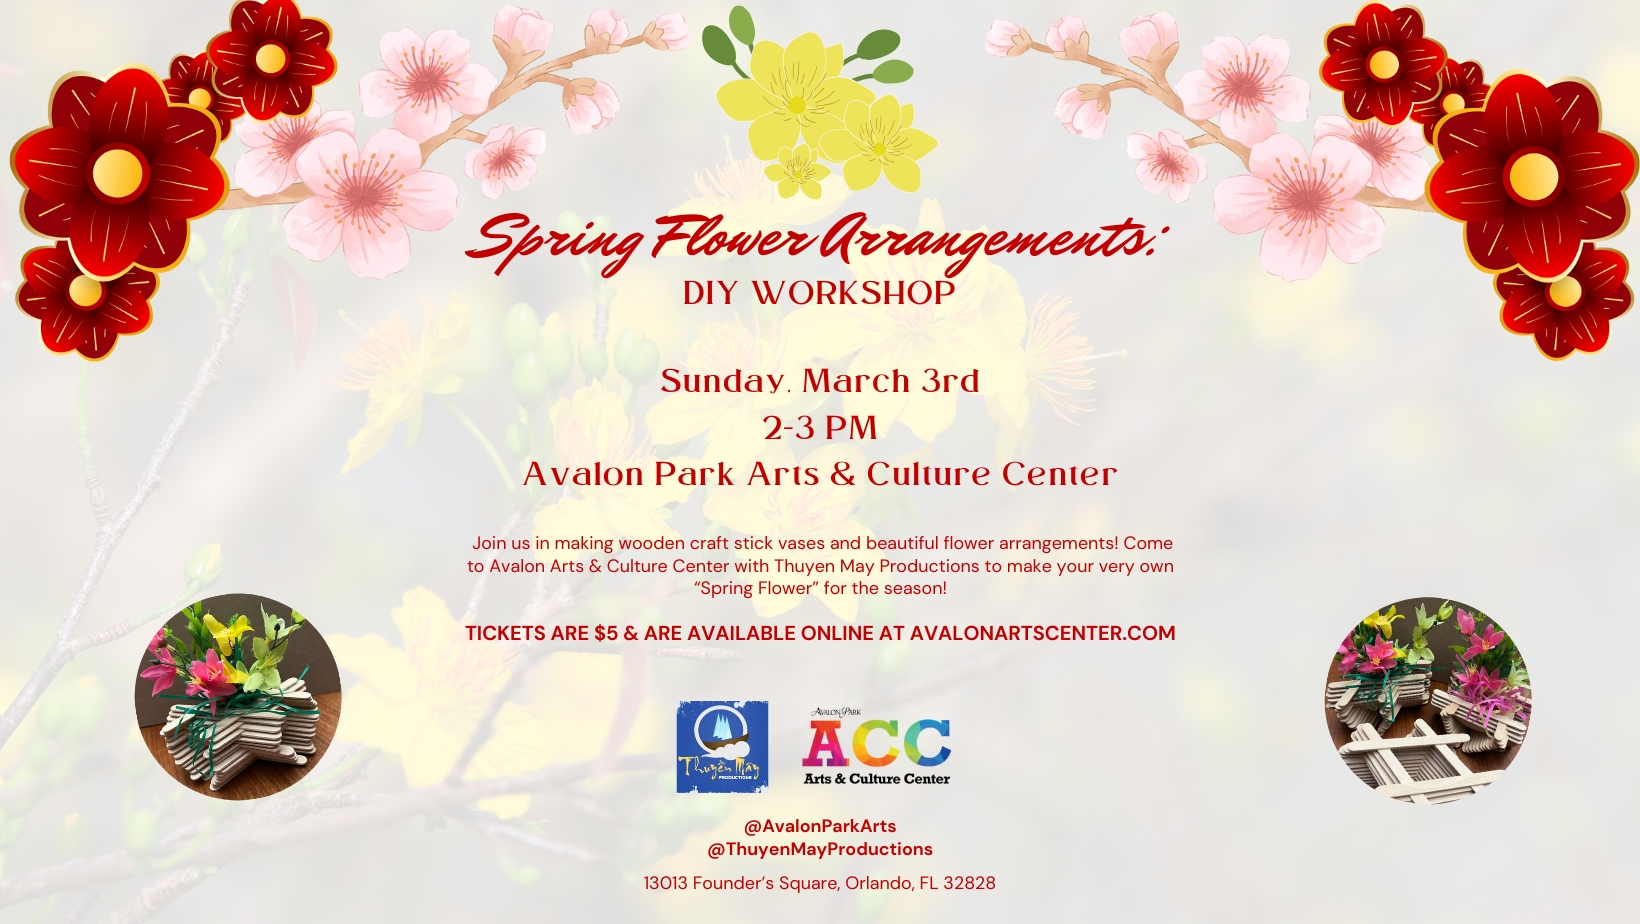 Spring Flower Arrangements:  DIY Workshop cover image